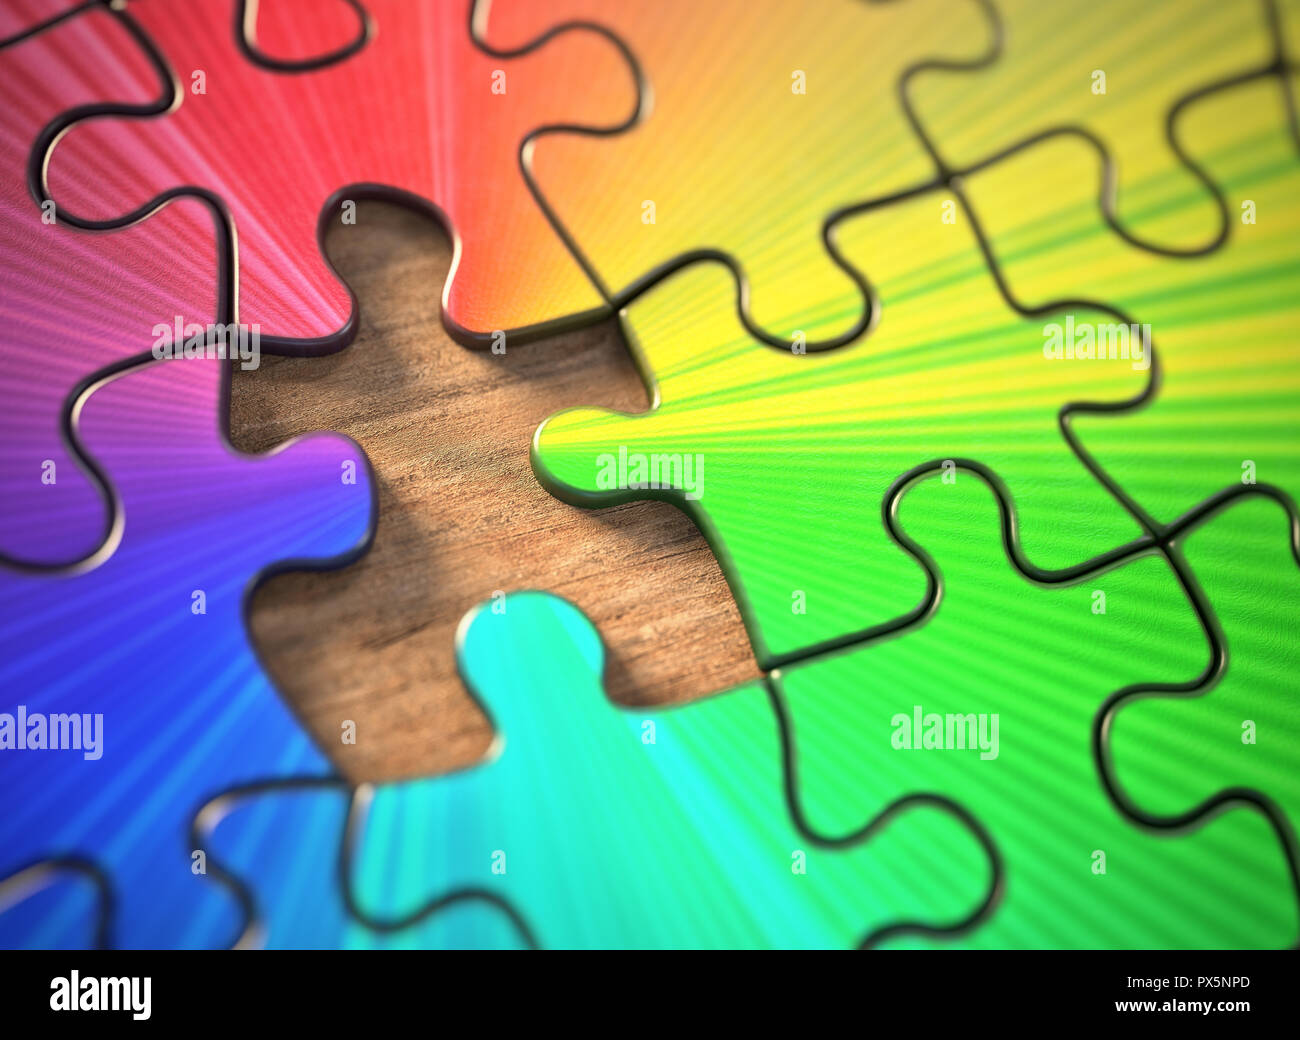 Farbige Puzzle mit einem fehlenden Stück. Mangel an dem Teil, der die Farben gibt. Stockfoto